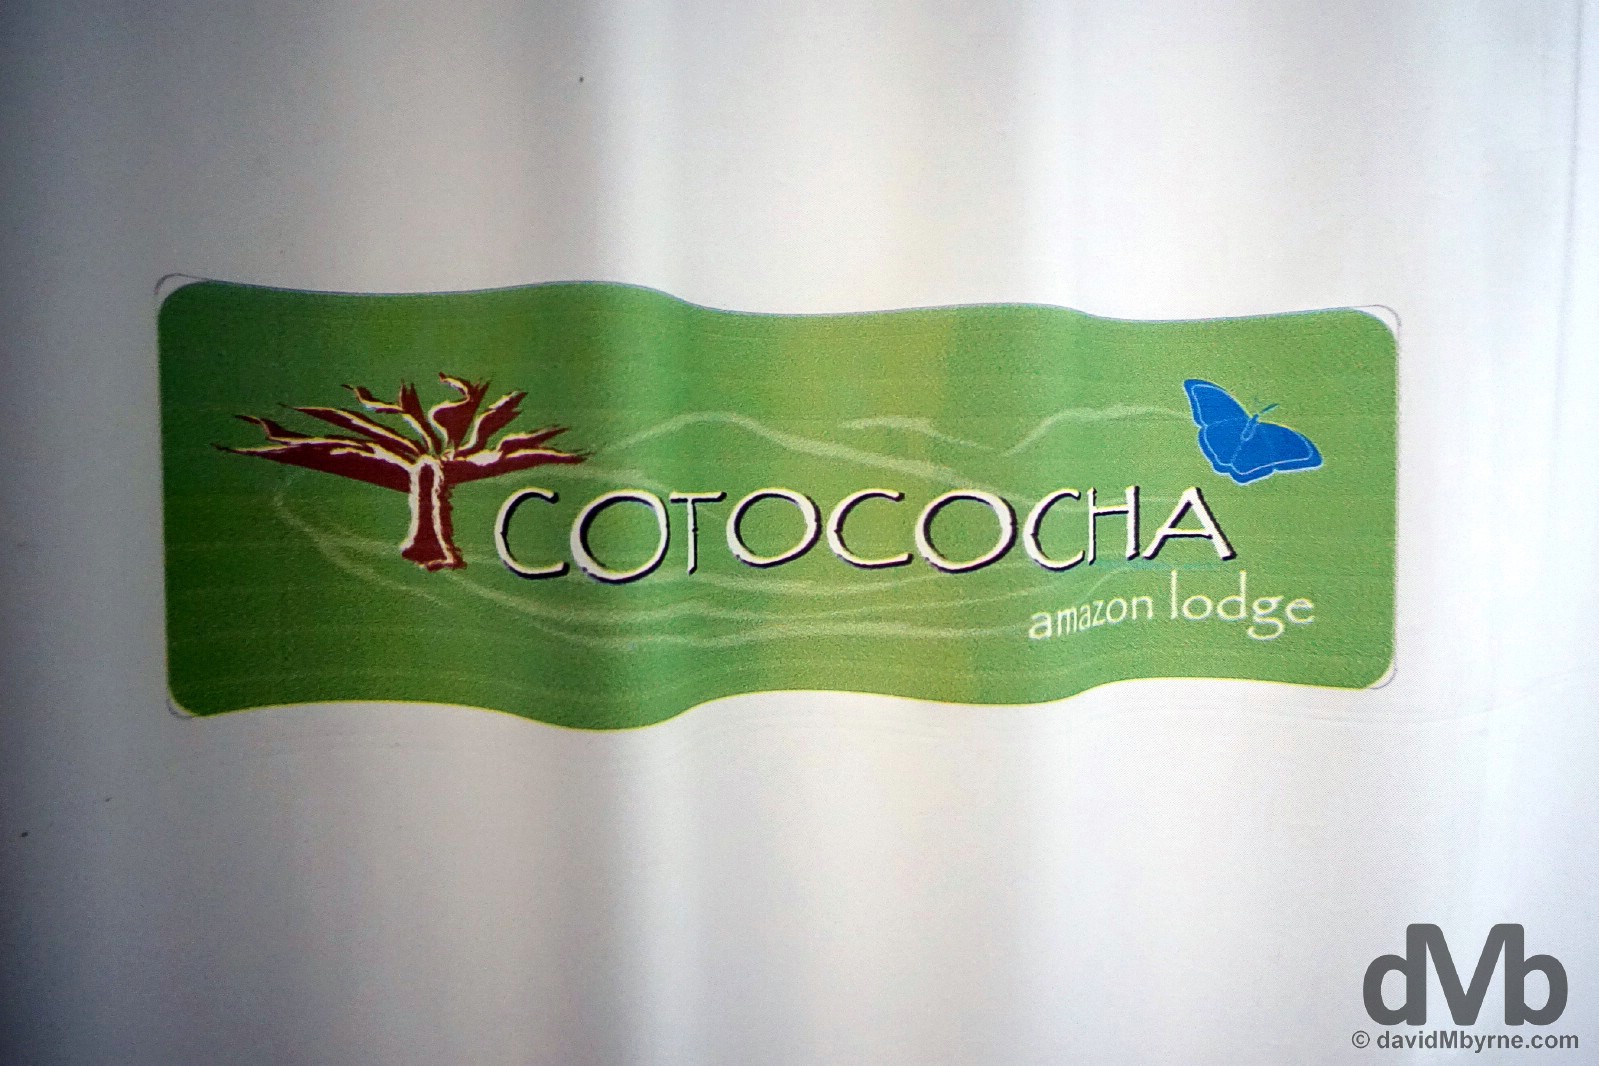 Cotococha Amazon Lodge, Ecuador. July 11, 2015.